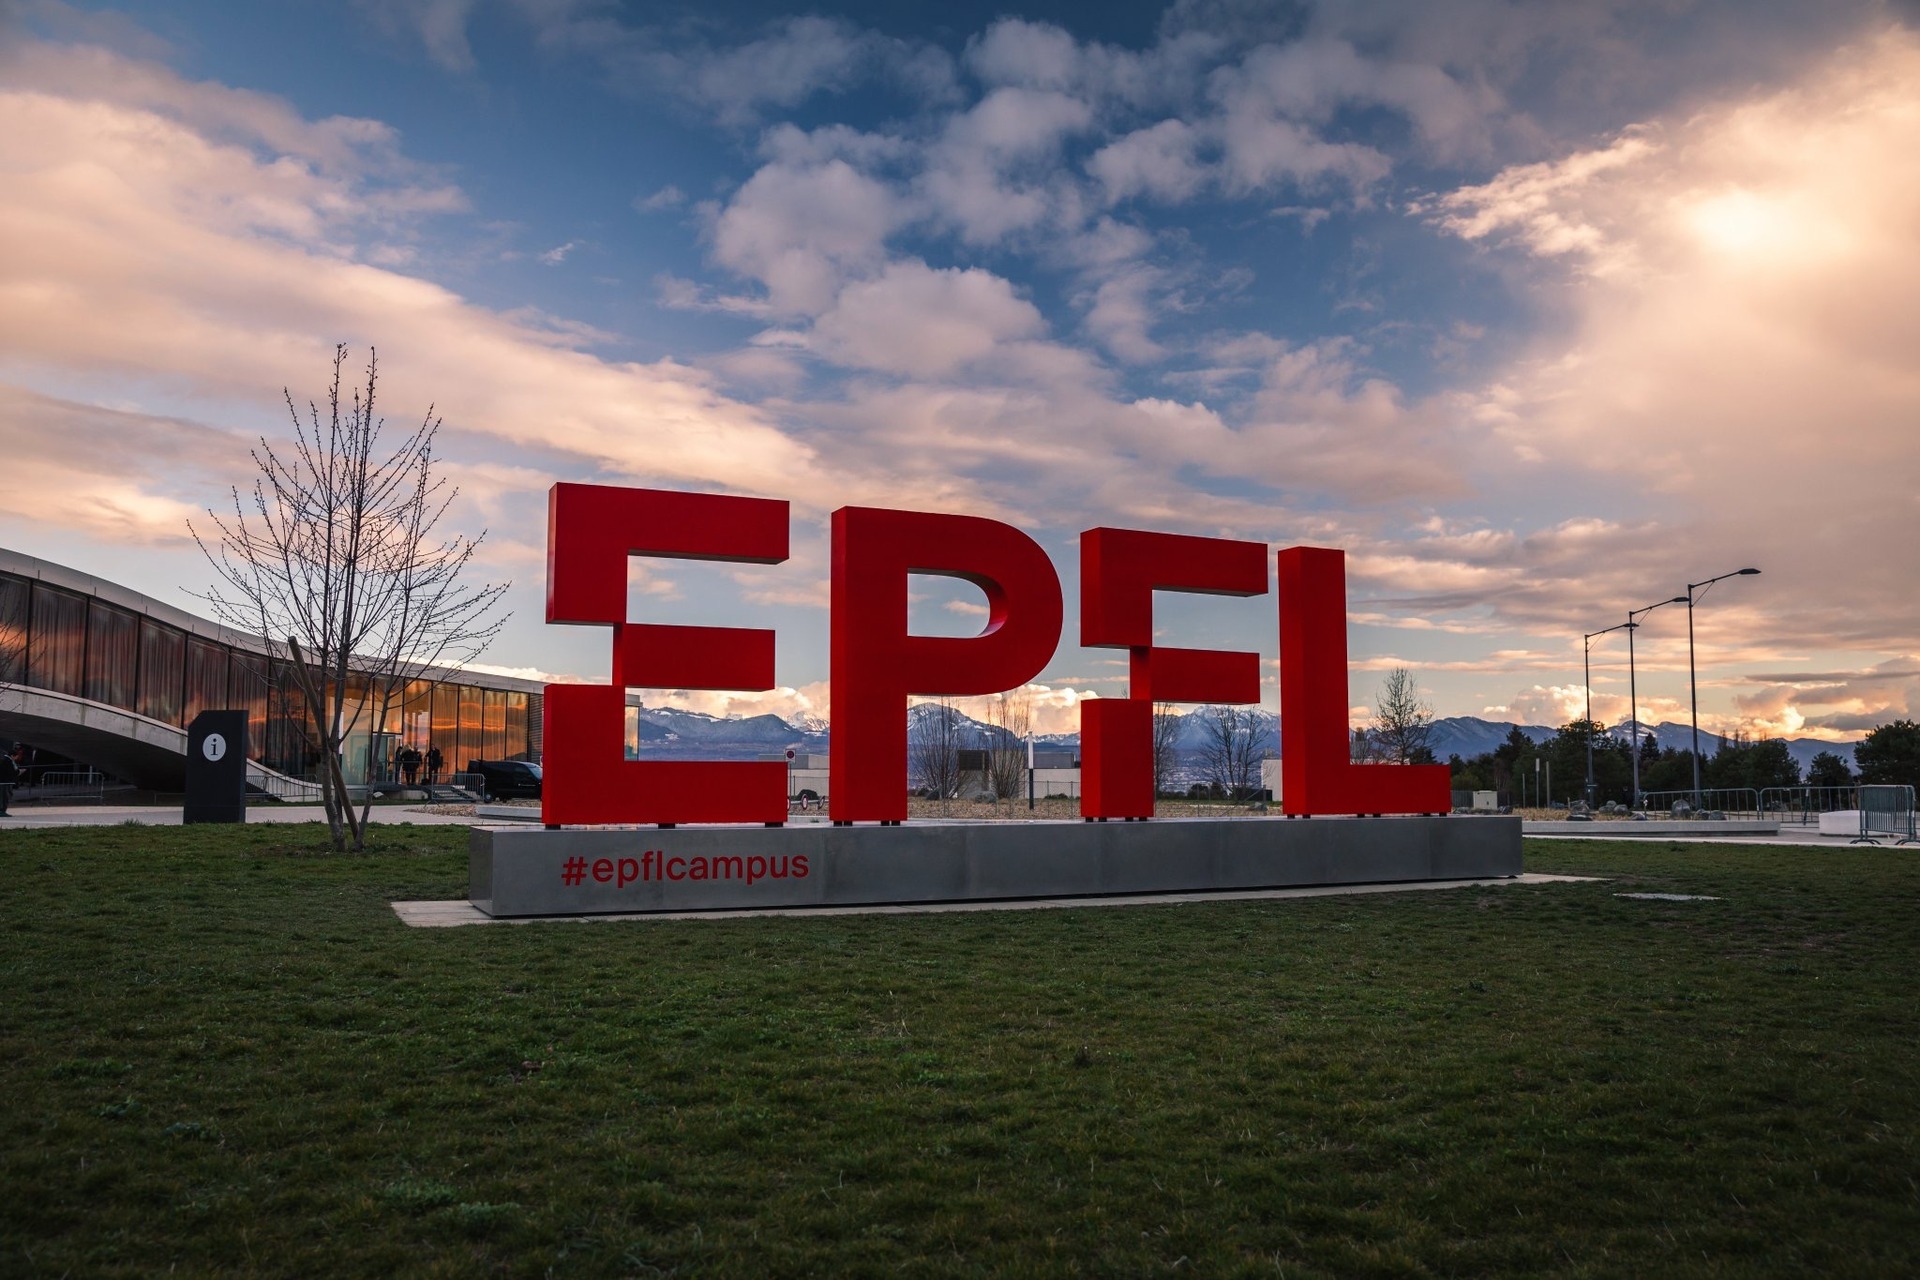 ການຮຽນຮູ້ເຄື່ອງຈັກ: ຮູບແບບ multimodal ໃຫມ່ສໍາລັບ AI ທີ່ມີຄວາມຍືດຫຍຸ່ນຫຼາຍຈາກ EPFL